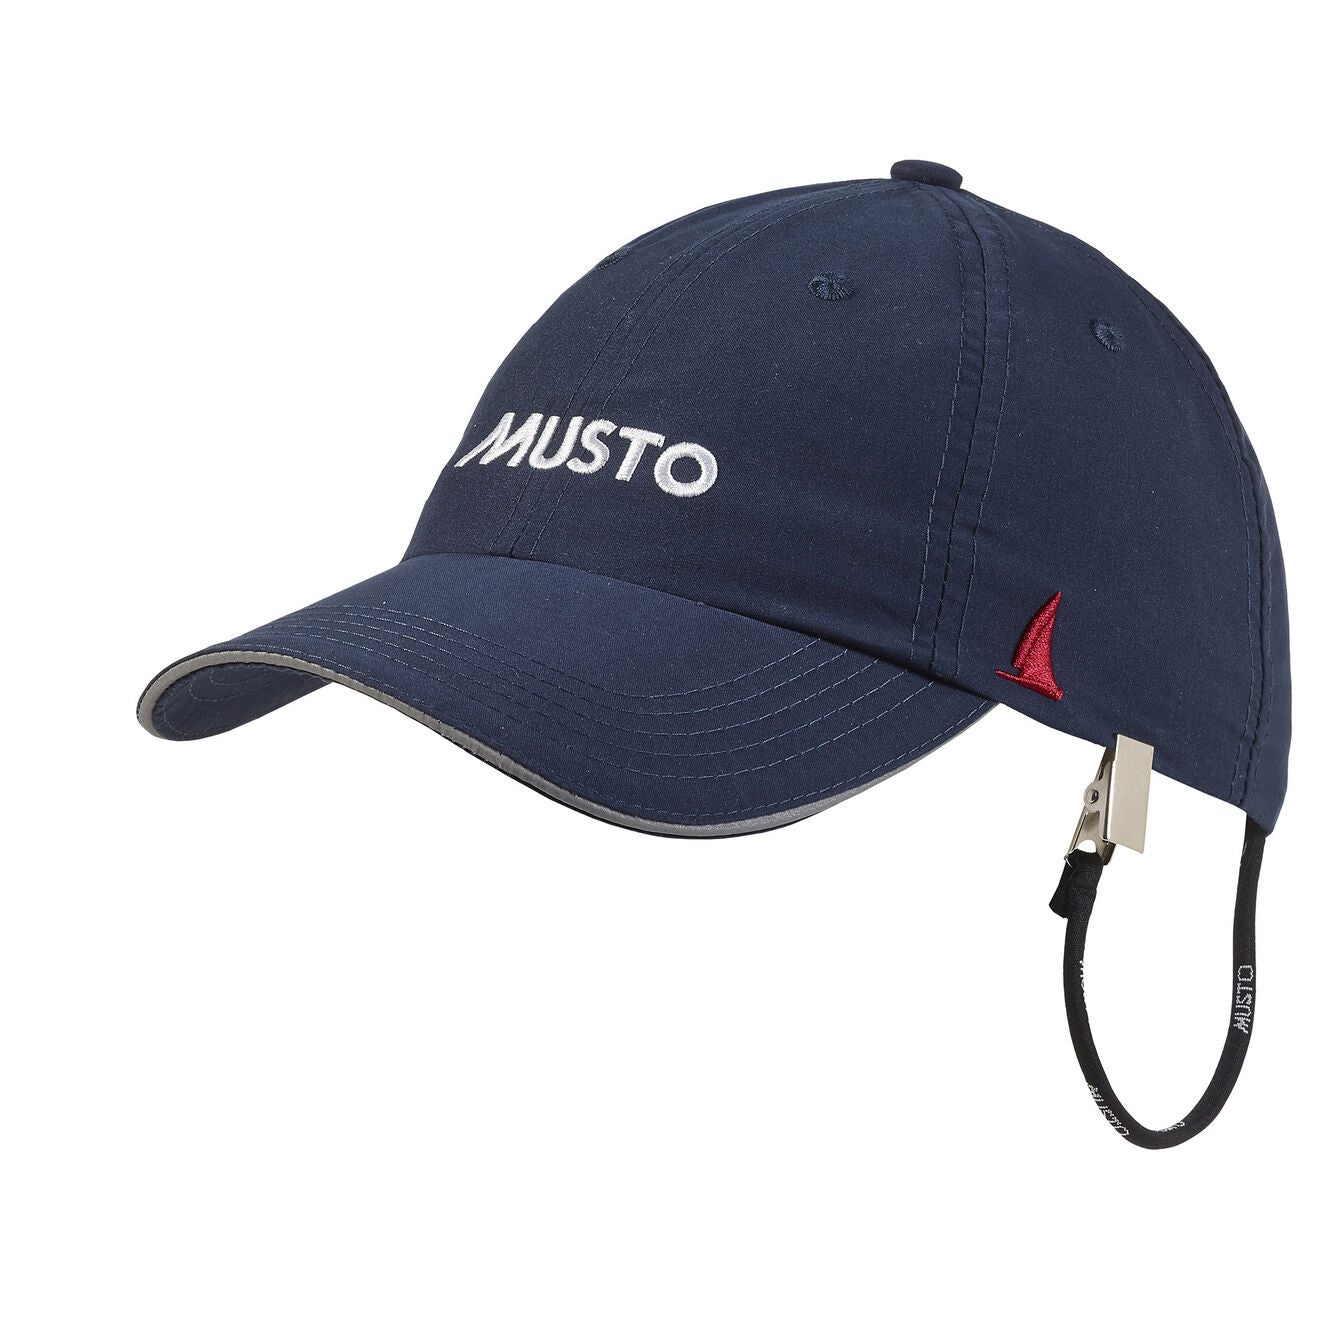 MUSTO Cap - Essential Evo Fast Dry Crew Cap - True Navy